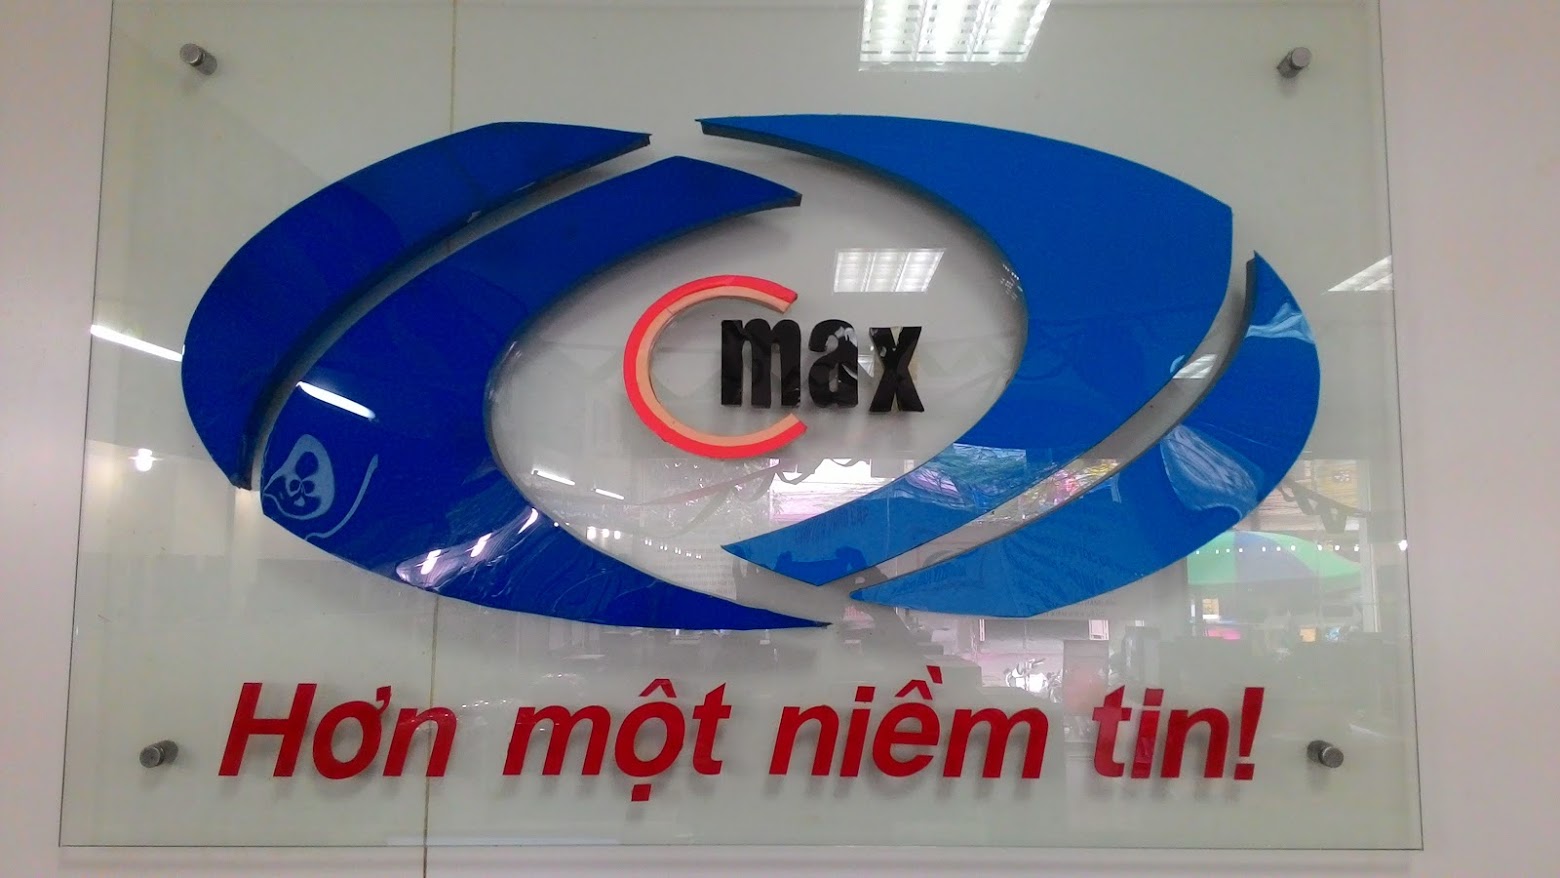 Công ty TNHH công nghệ và thương mại Cmax